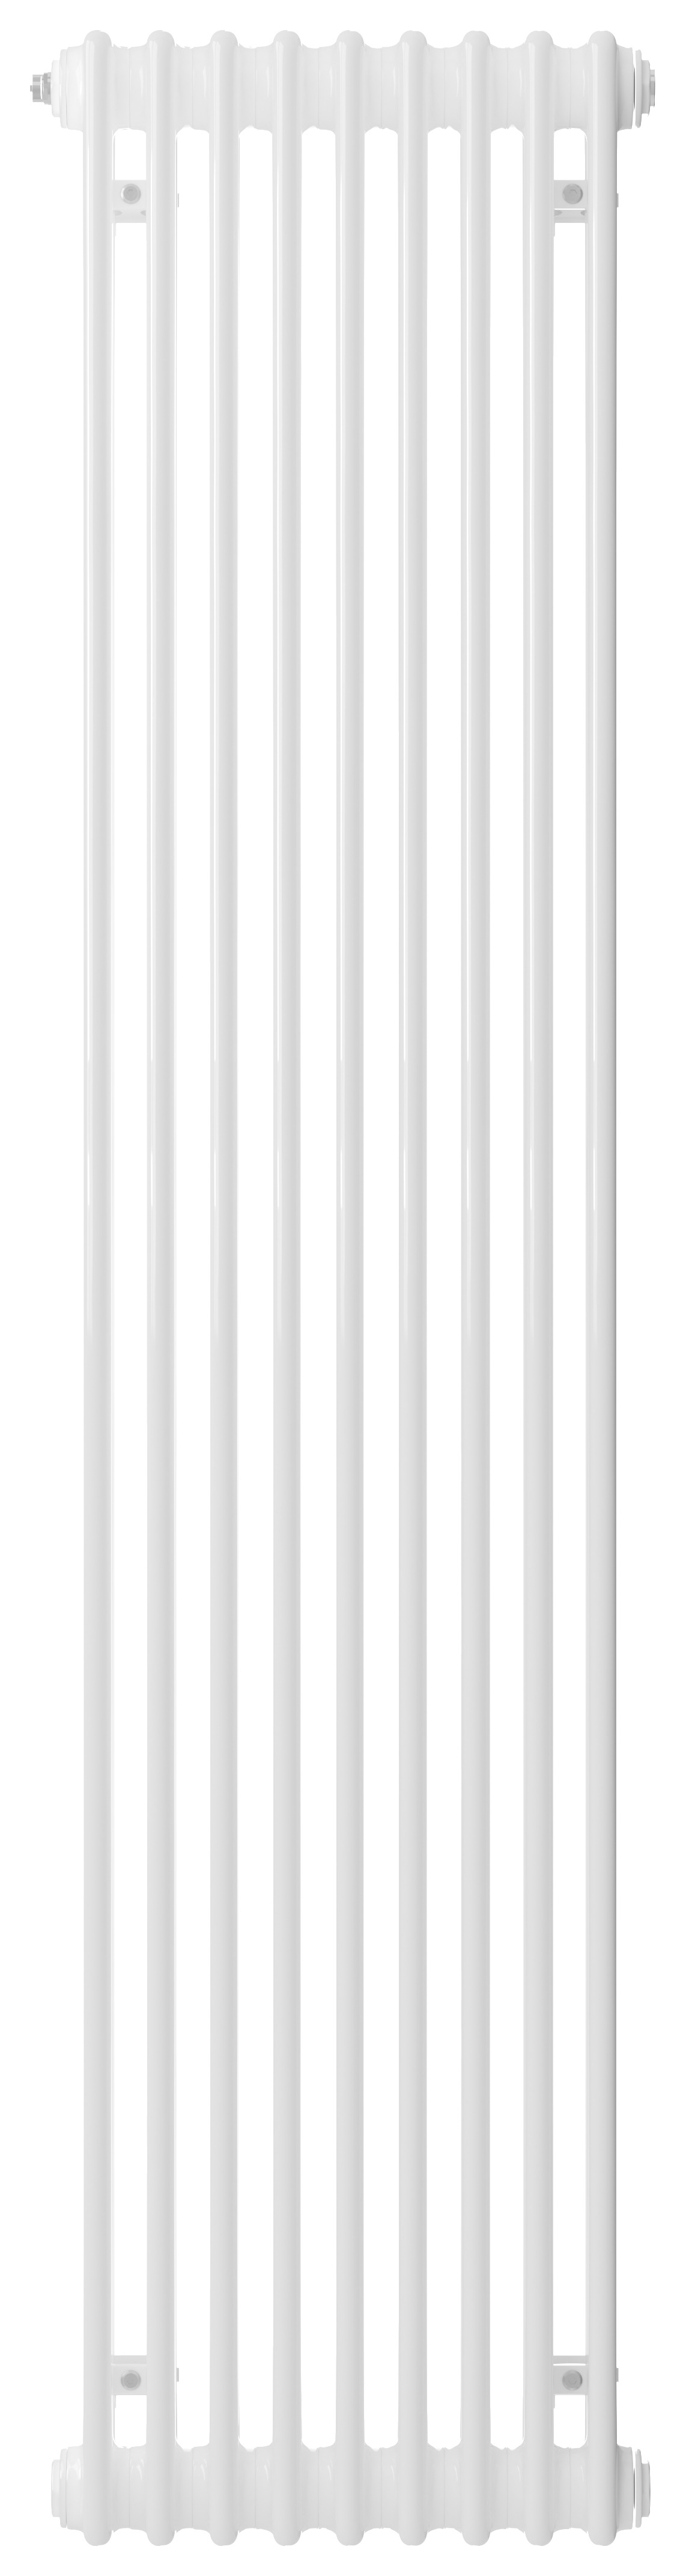 Image of Henrad 2 Column Vertical Designer Radiator - White 2000 x 348 mm